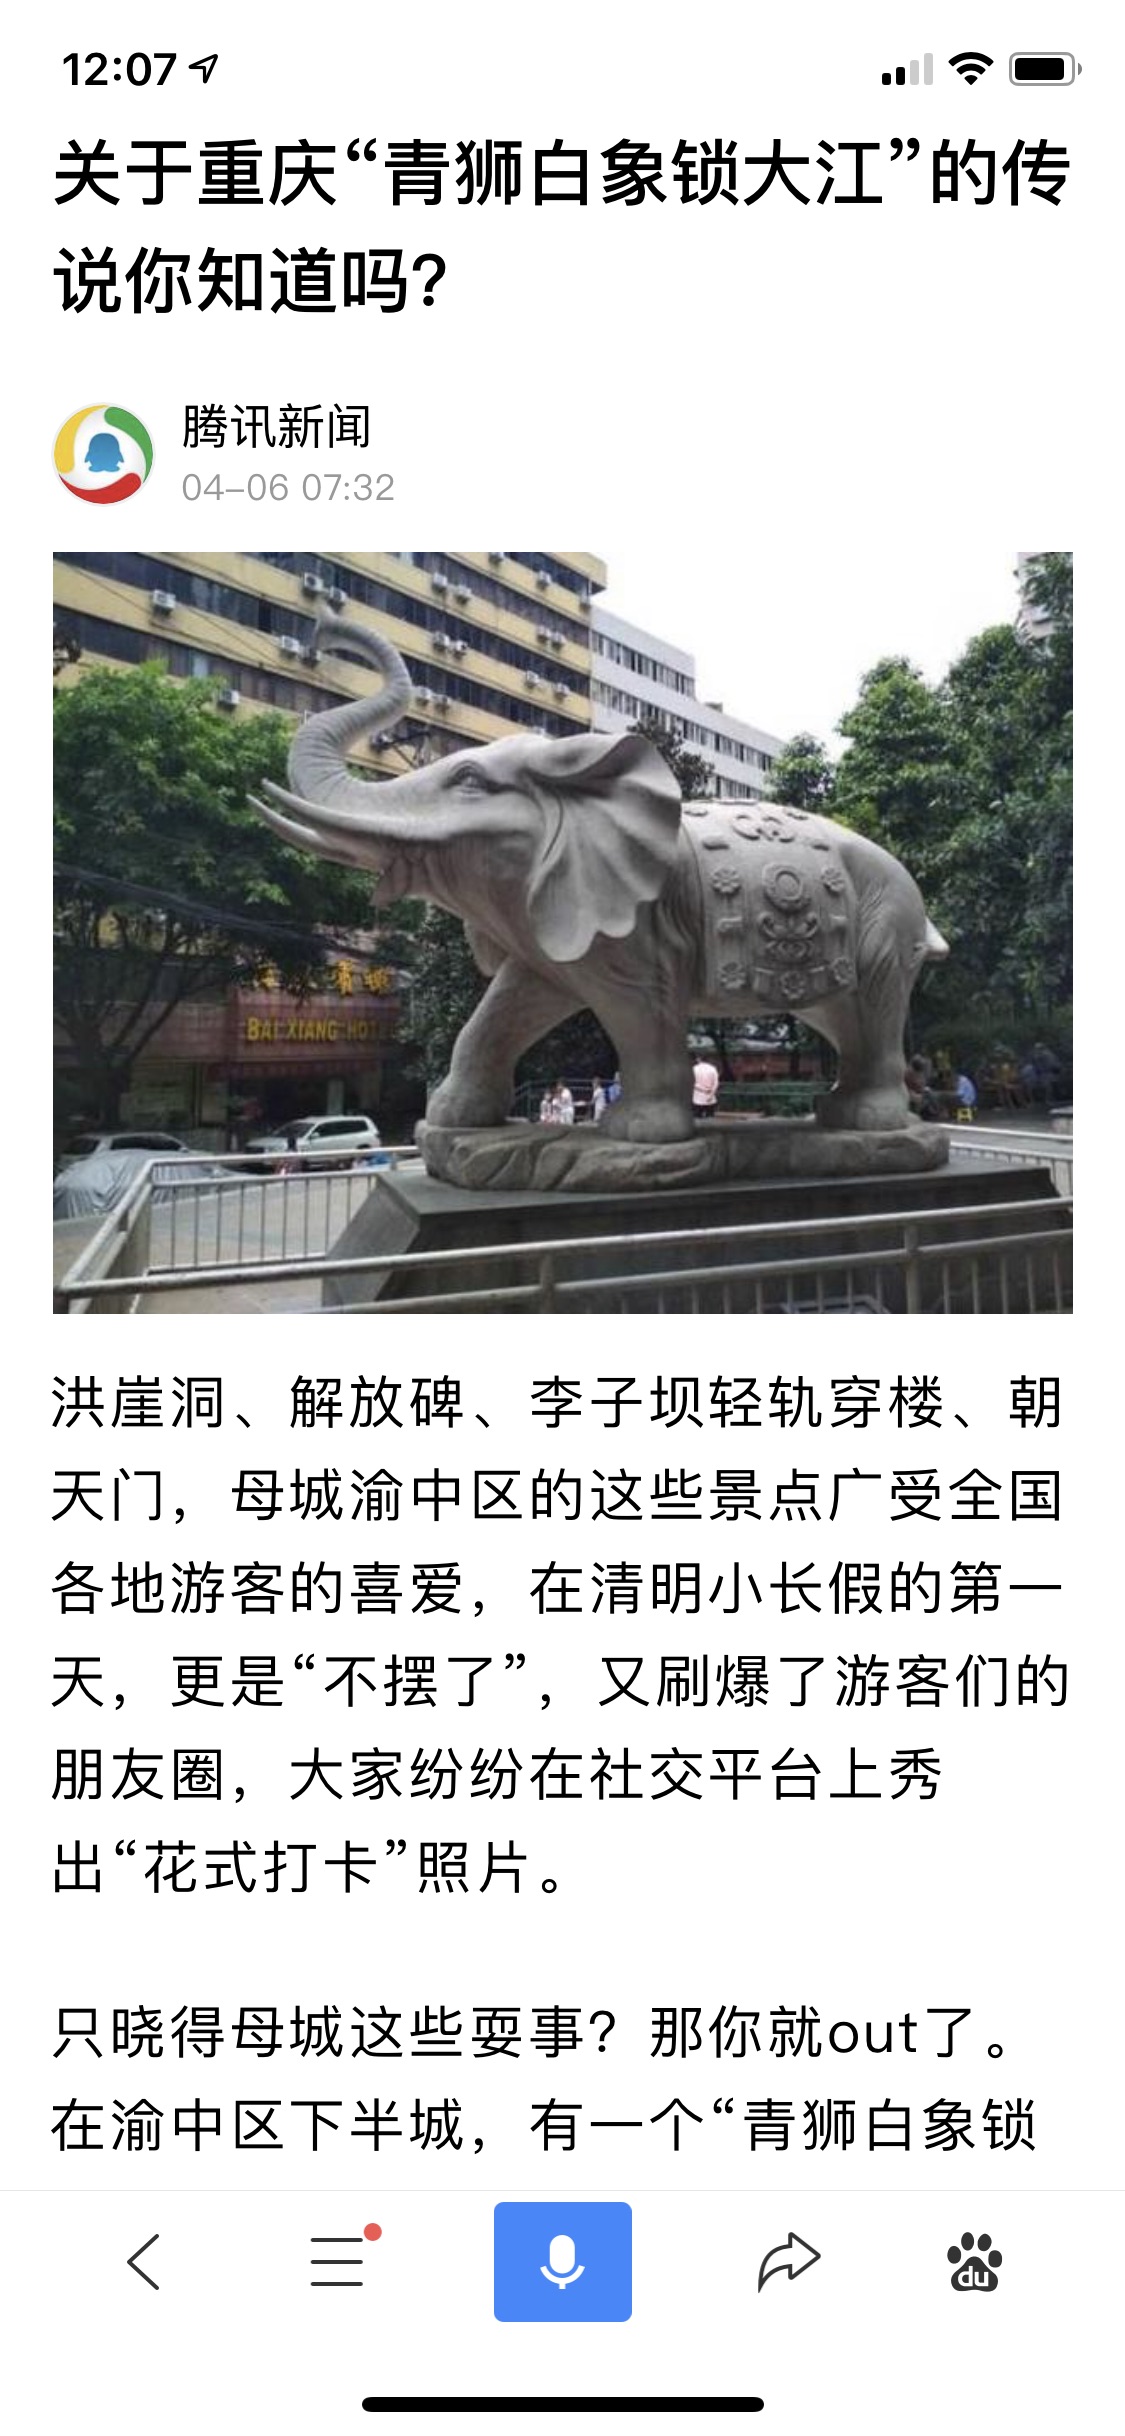 重庆有"青狮白象锁大江"的说法,这是什么意思?